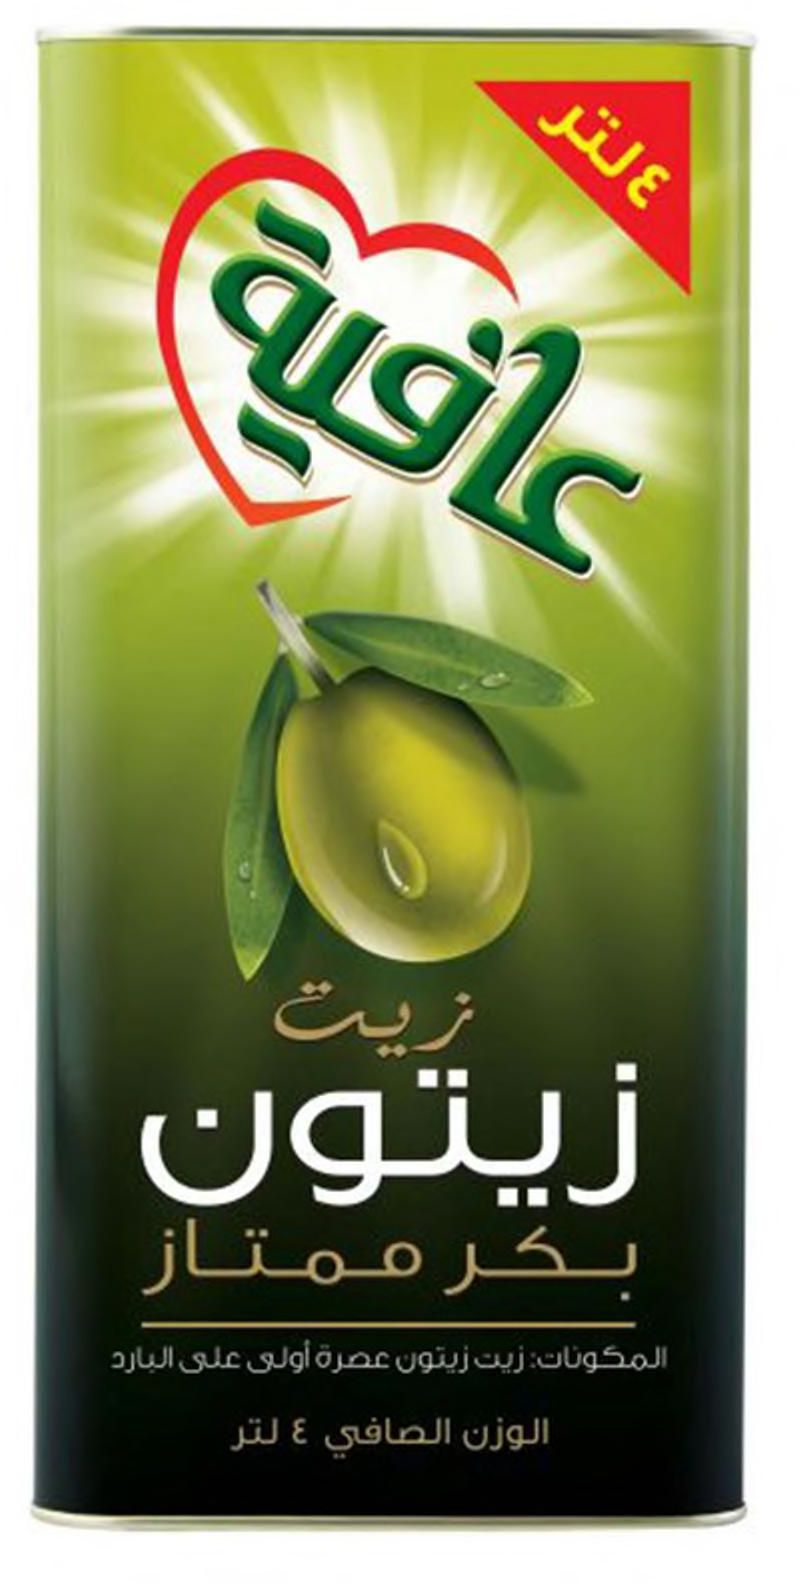 Afia extra virgin olive oil 4 L